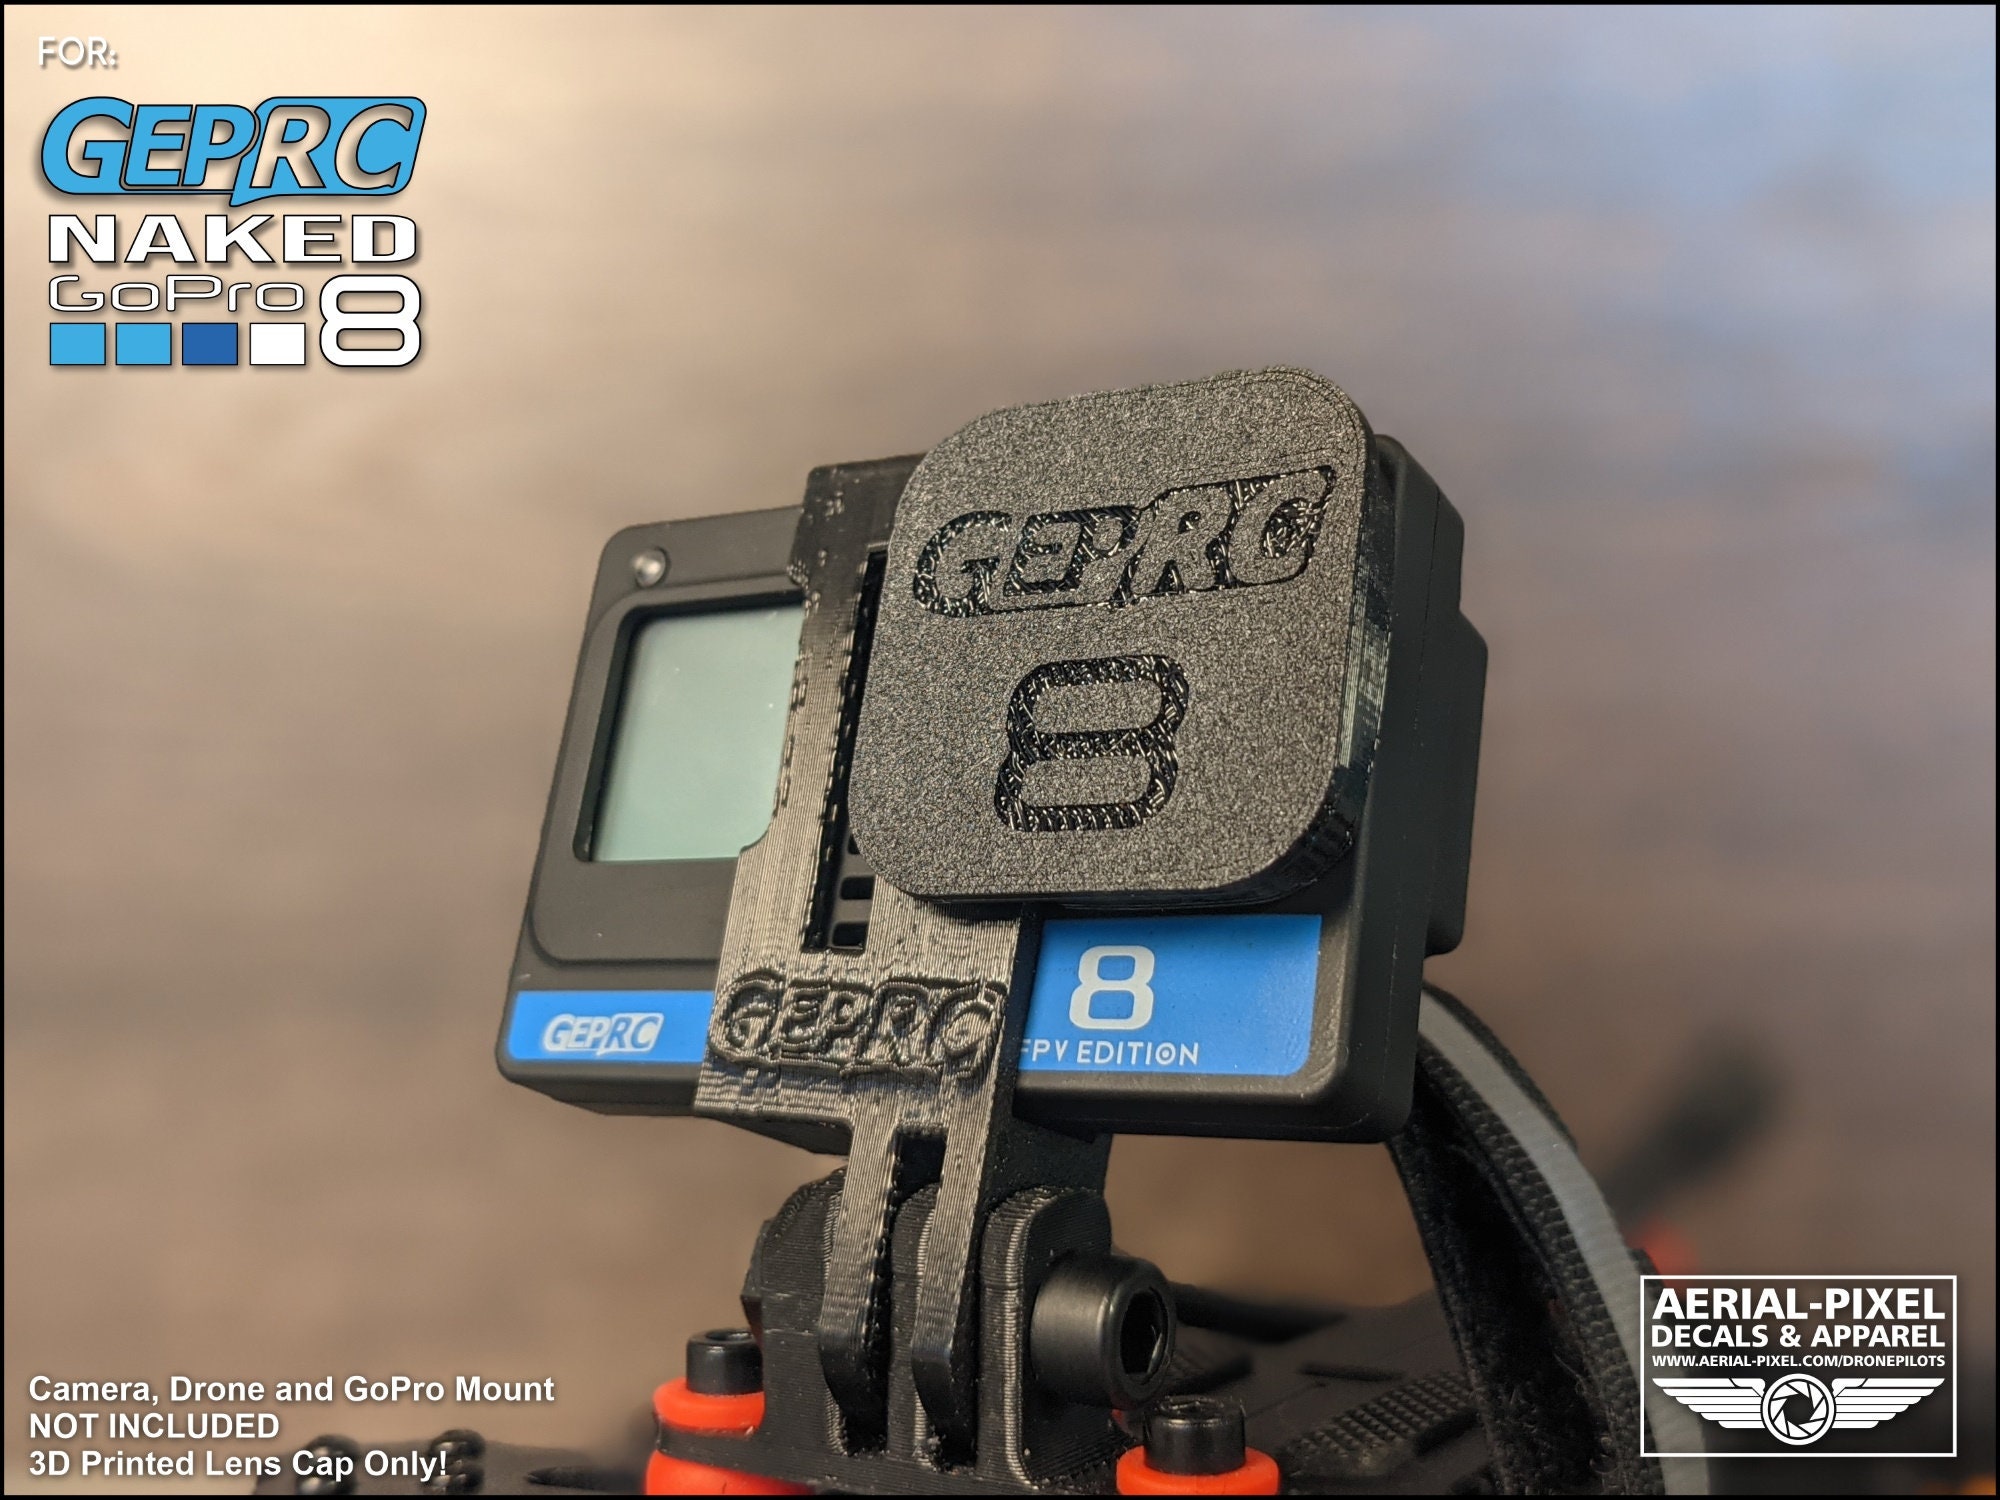 GEPRC Naked GoPro Hero 8 3D impreso TPU Capuchón de lente Etsy España